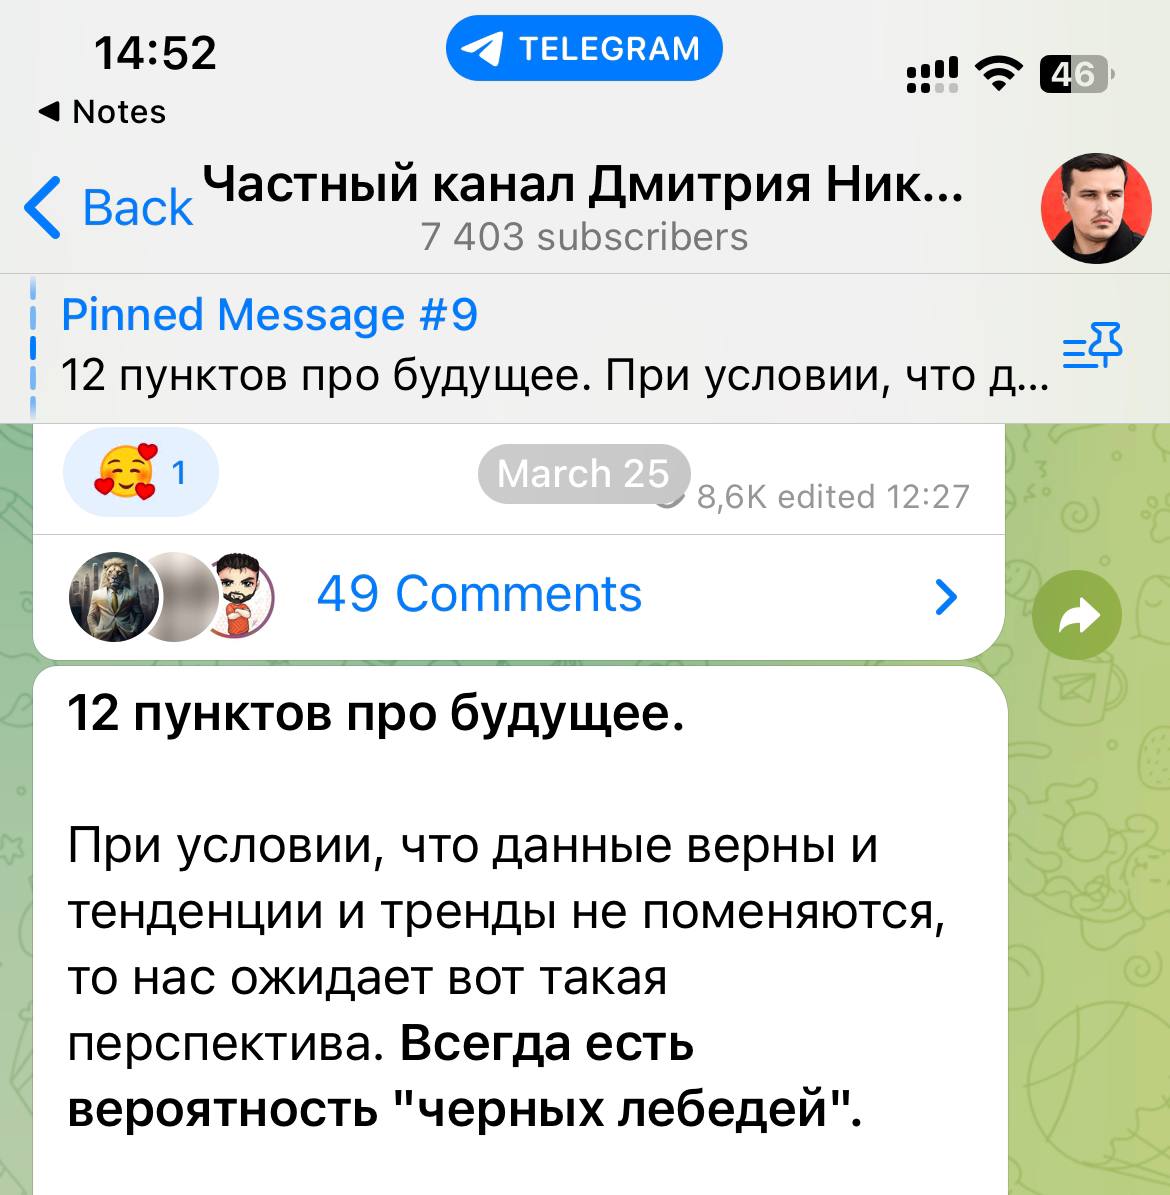 Дмитрий никотин телеграмм последнее видео смотреть бесплатно без регистрации в хорошем качестве фото 57